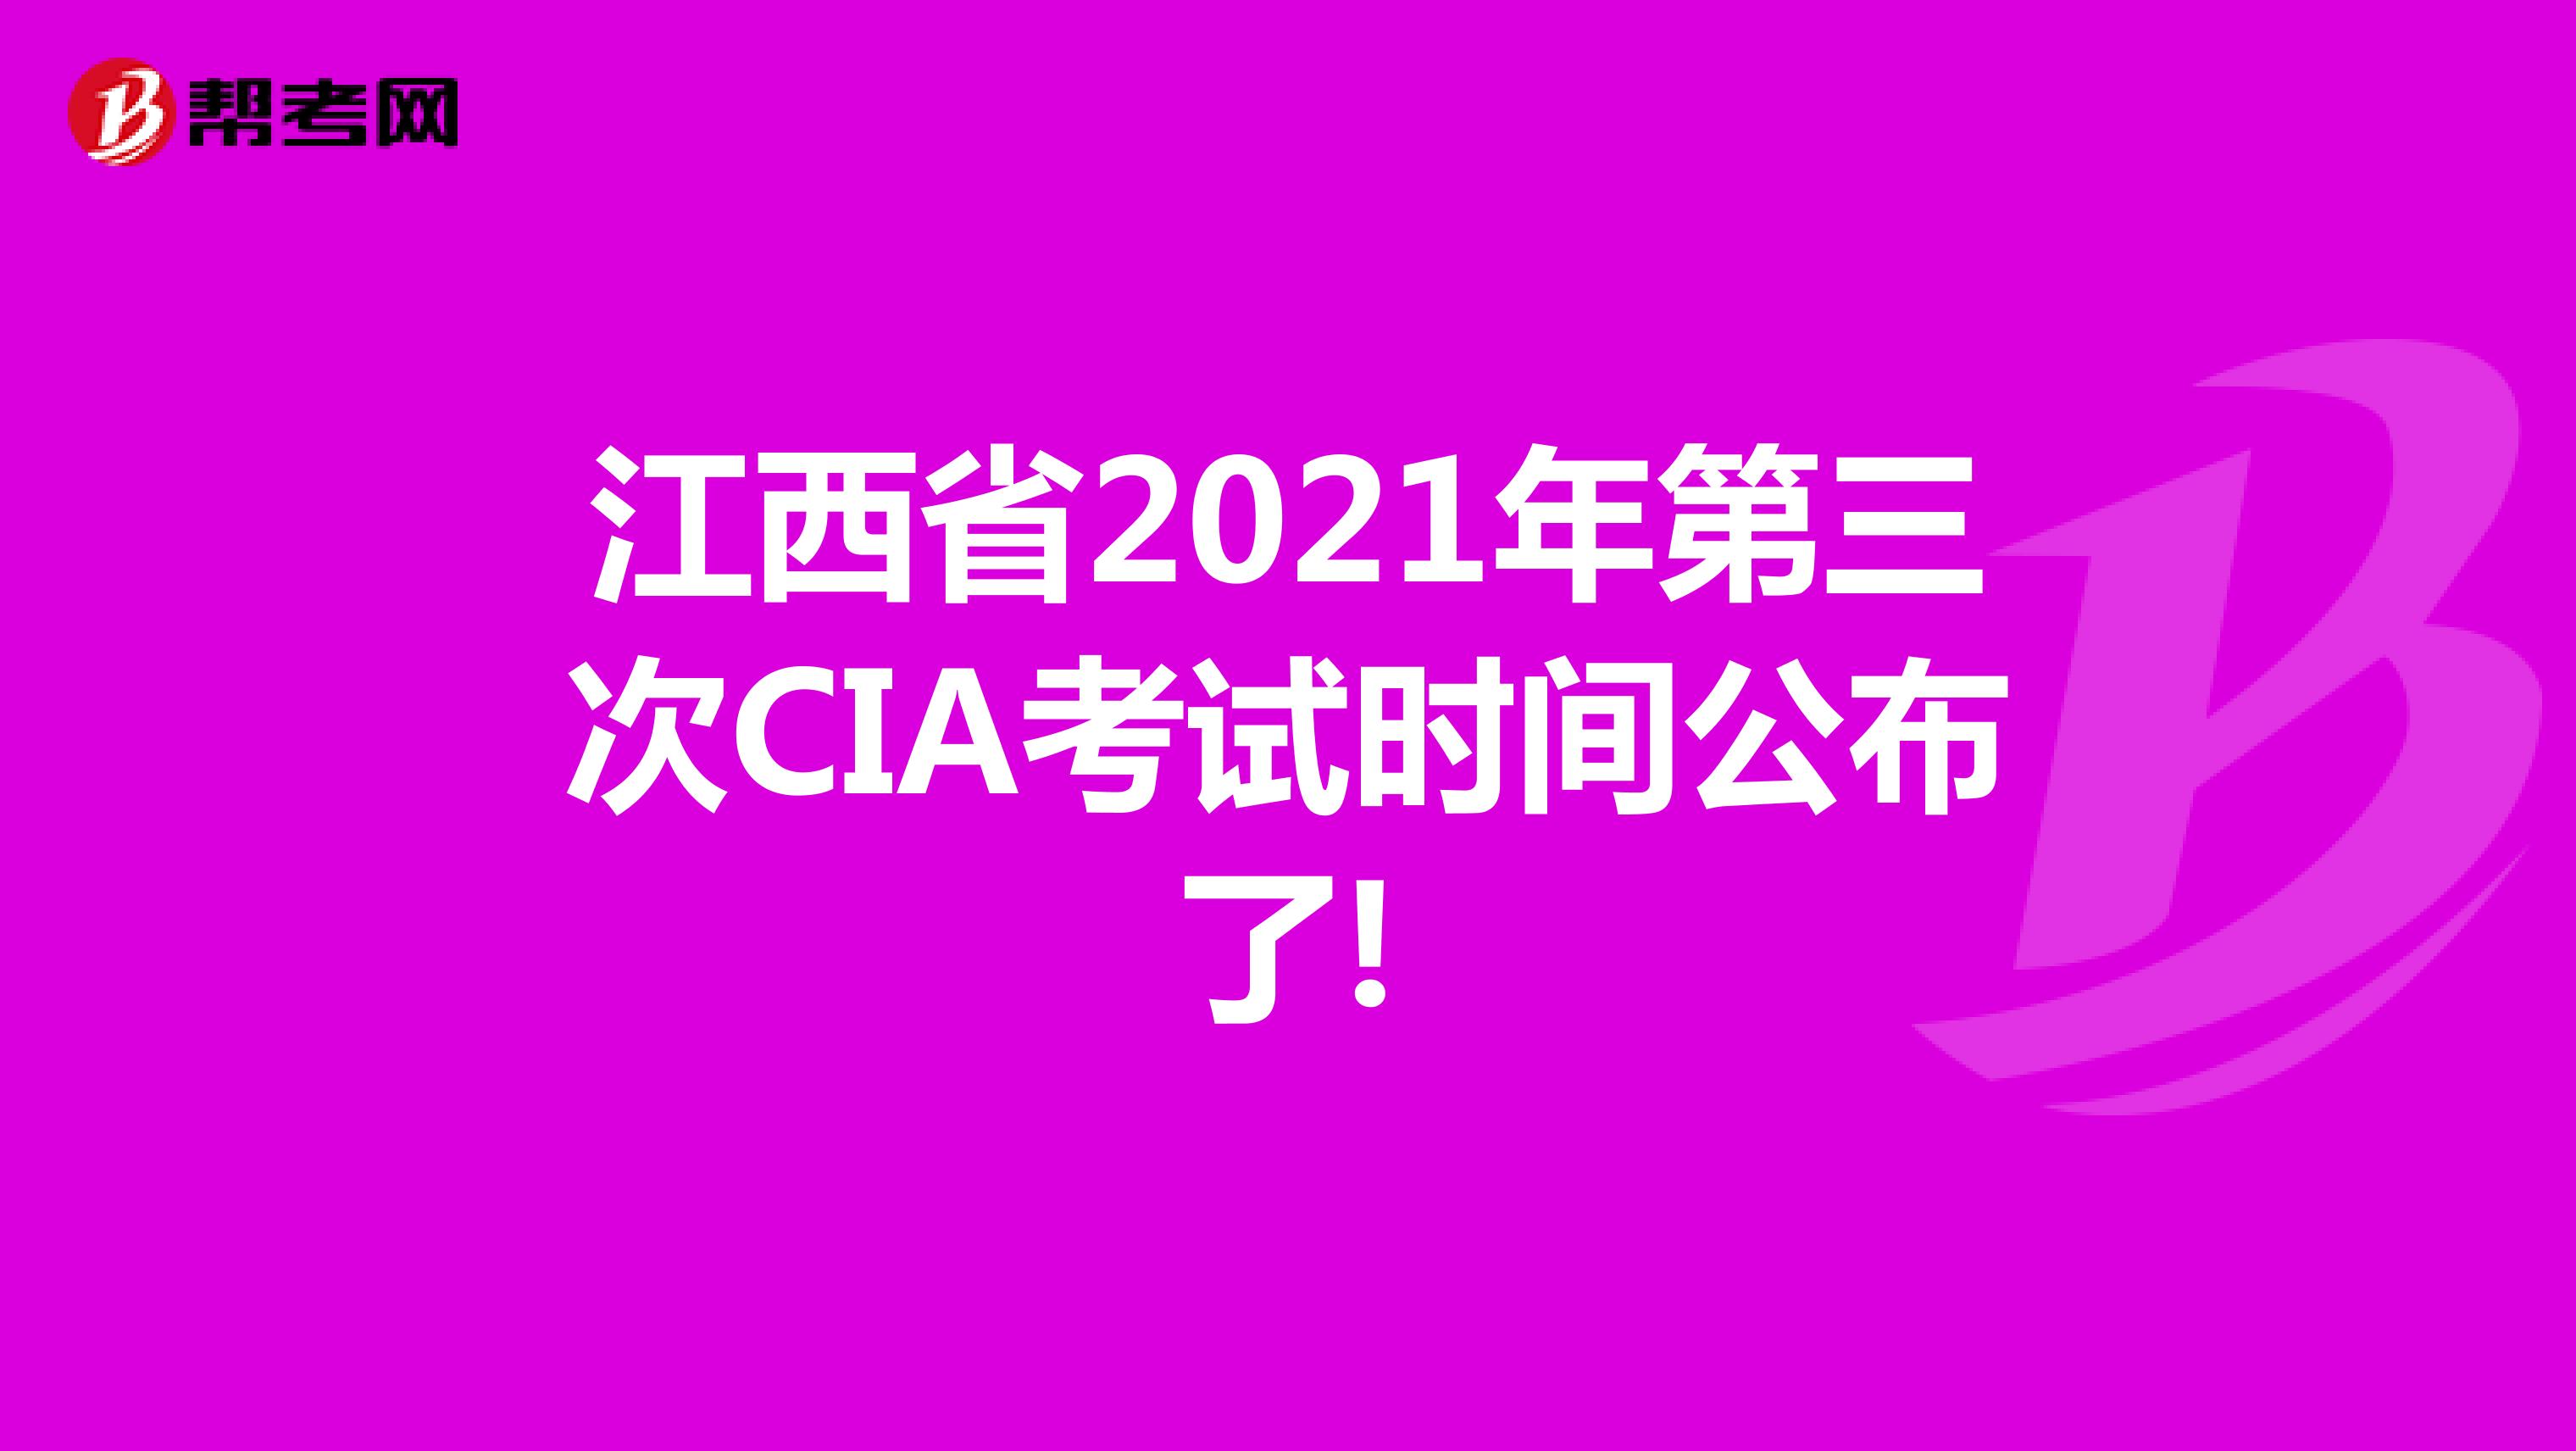 江西省2021年第三次CIA考试时间公布了!